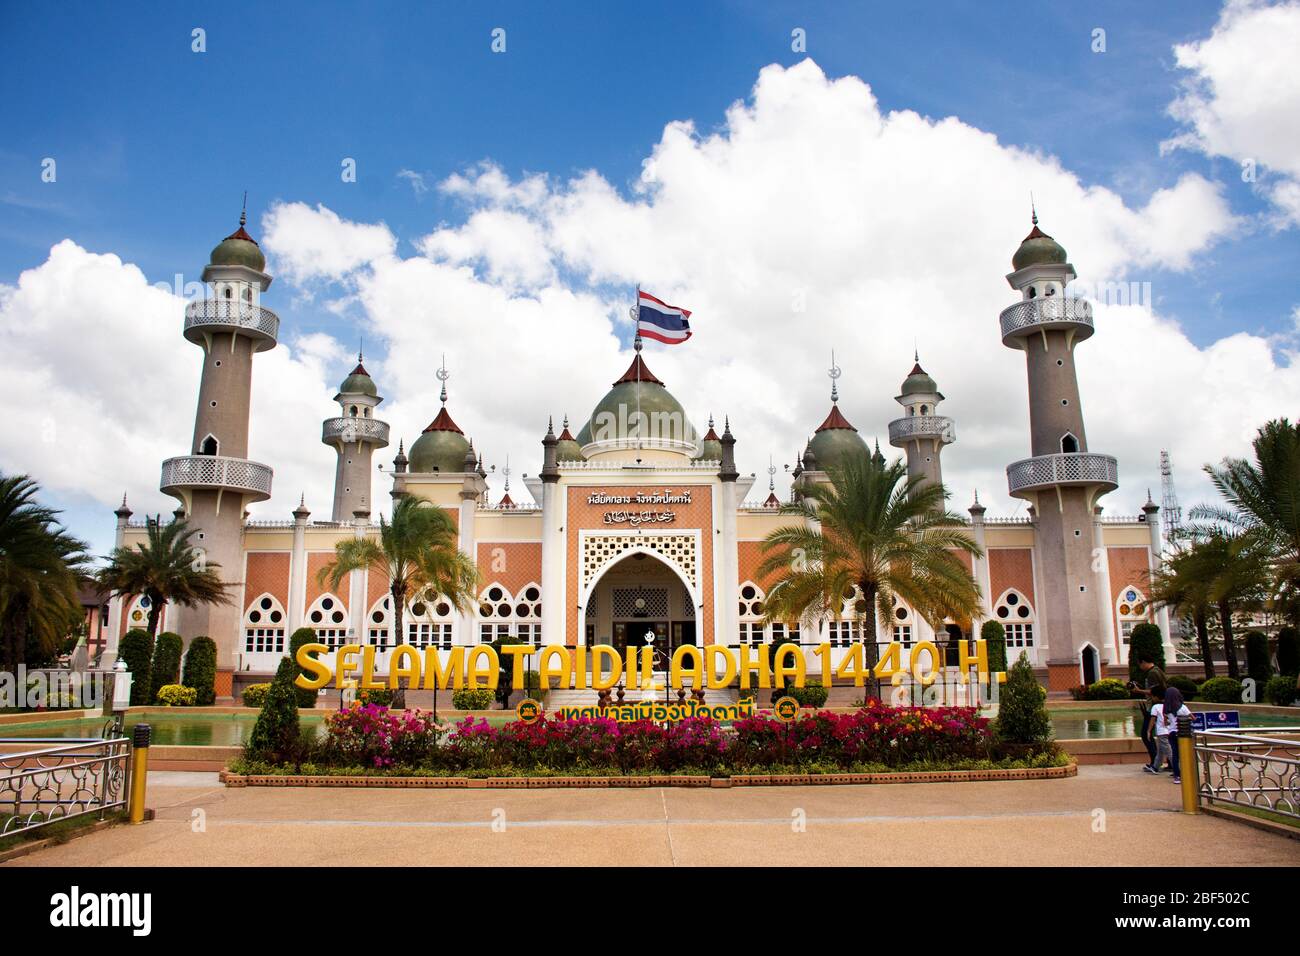 PATTANI, THAÏLANDE - 16 août : les thaïlandais et les voyageurs étrangers voyagent visiter et respecter la prière à la Mosquée centrale ou Masjid klang de Pattani au sou Banque D'Images